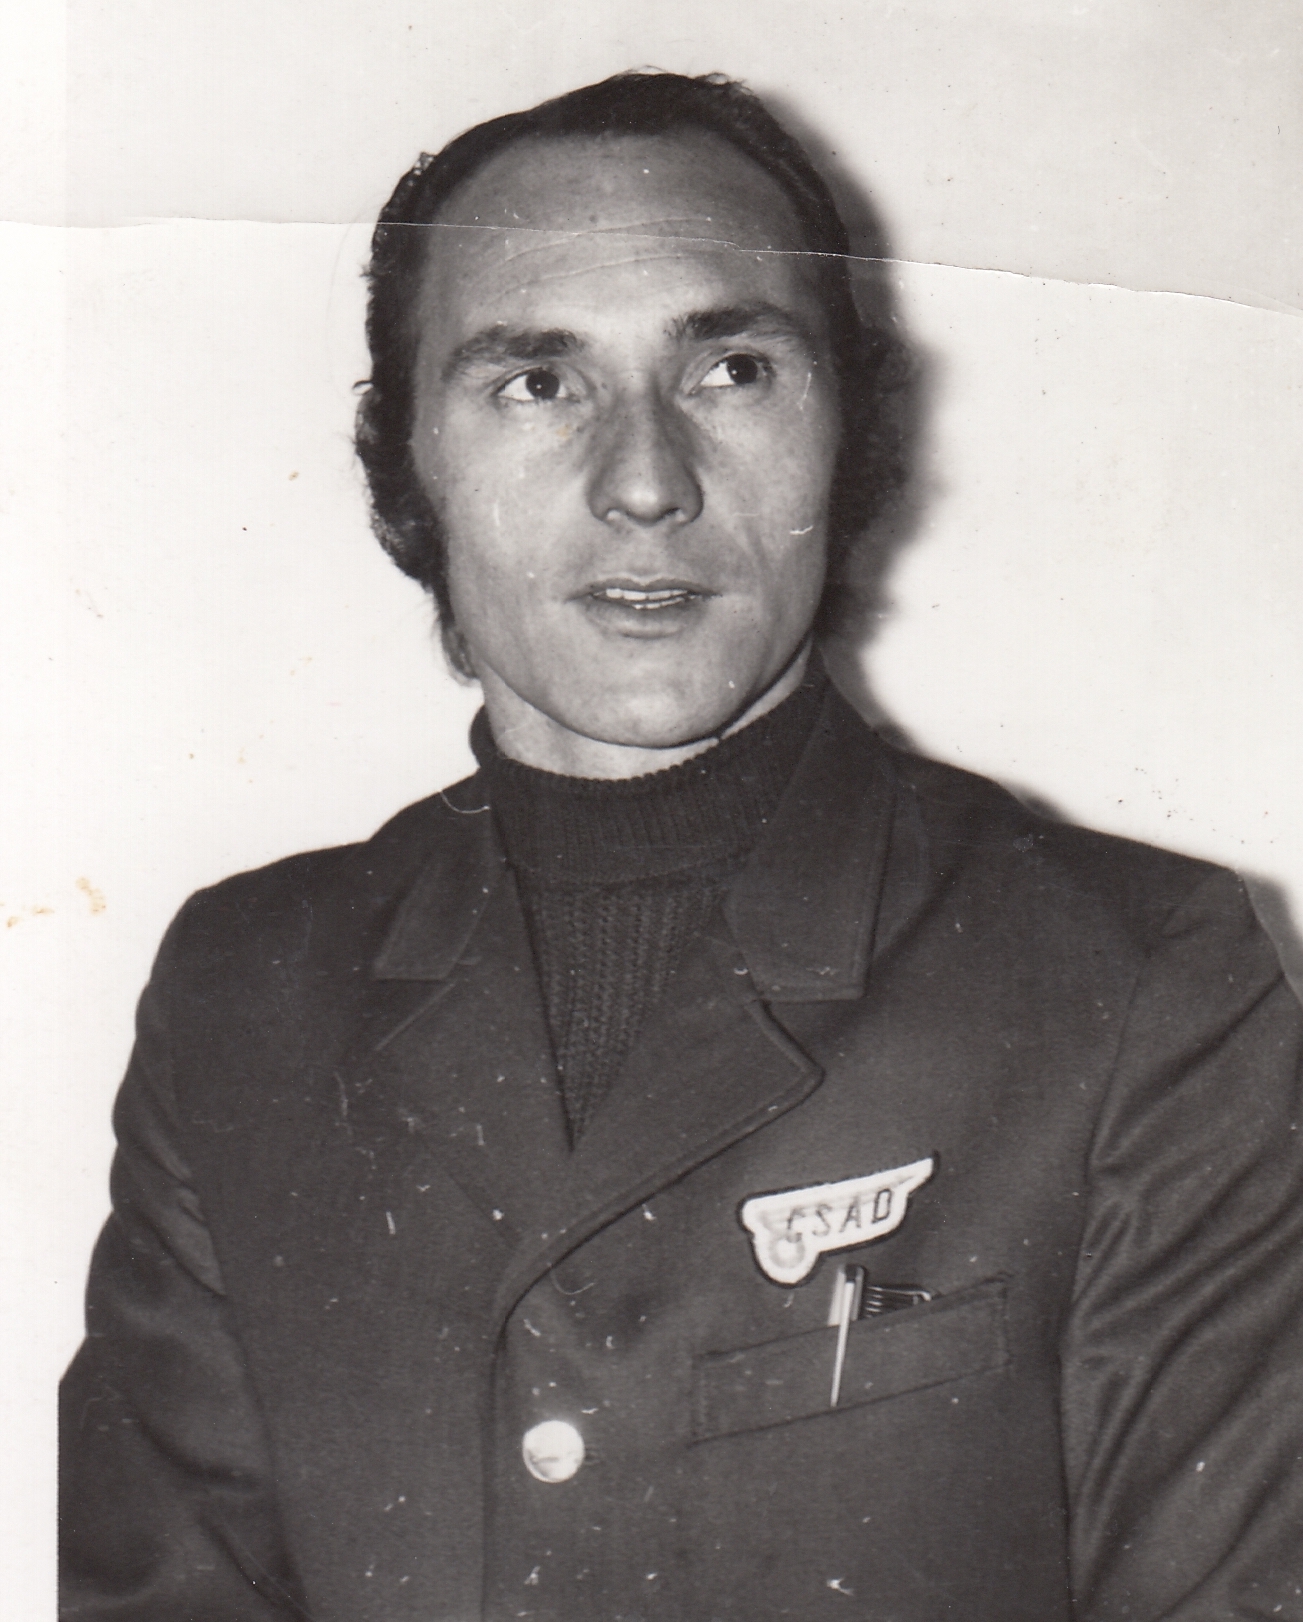 Albert Iser wearing a bus driver's uniform, 1970s